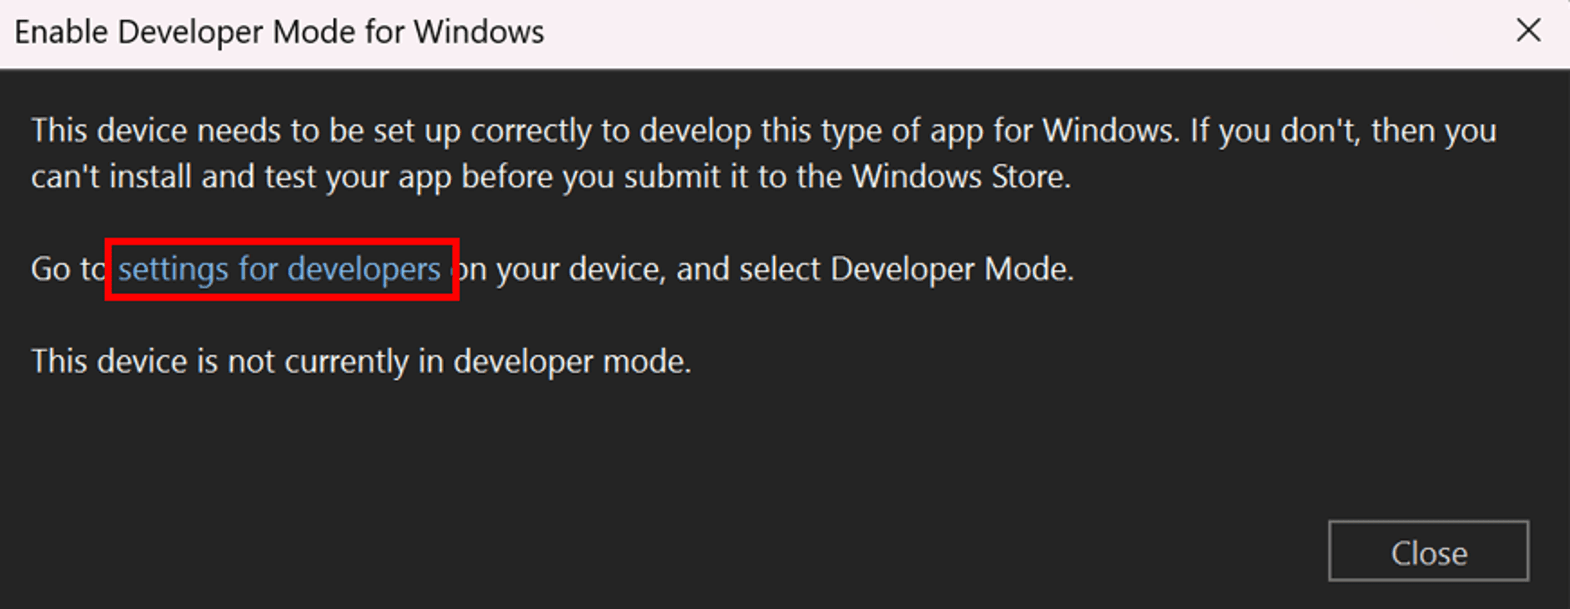 Cuadro de diálogo de Habilitar el modo de desarrollador para Windows.